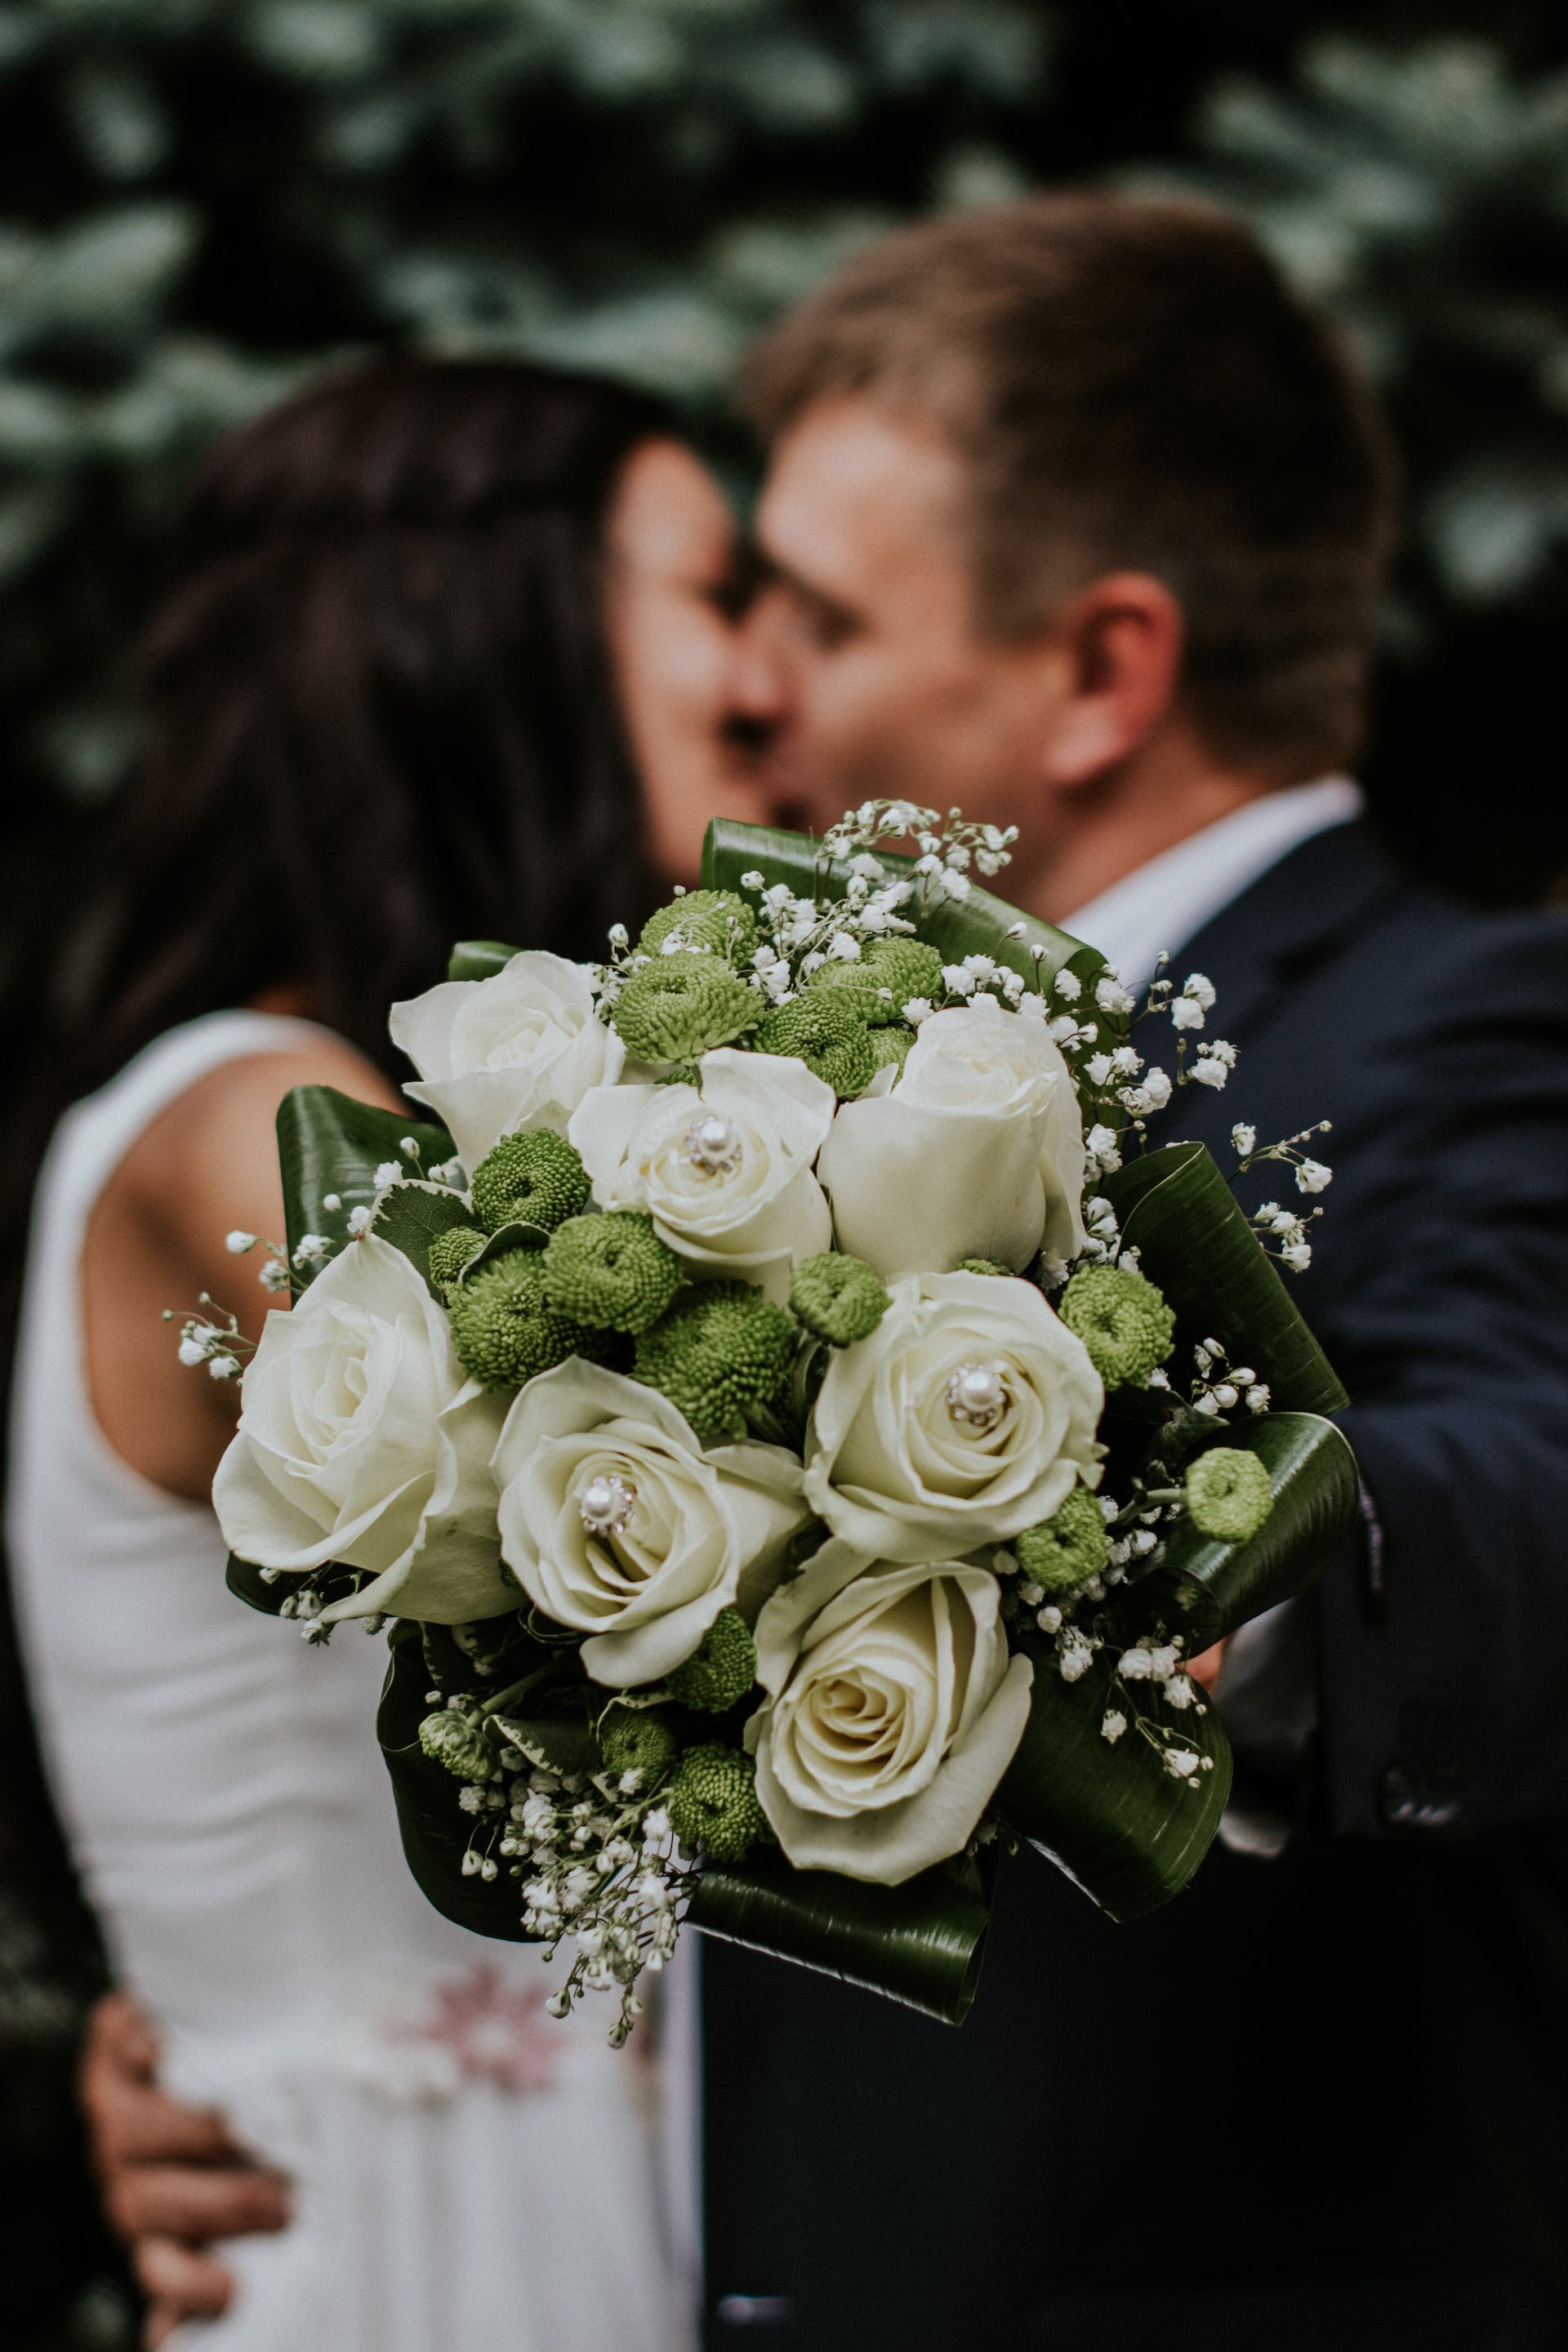 La mariée et le marié s'embrassent | Source : Pexels